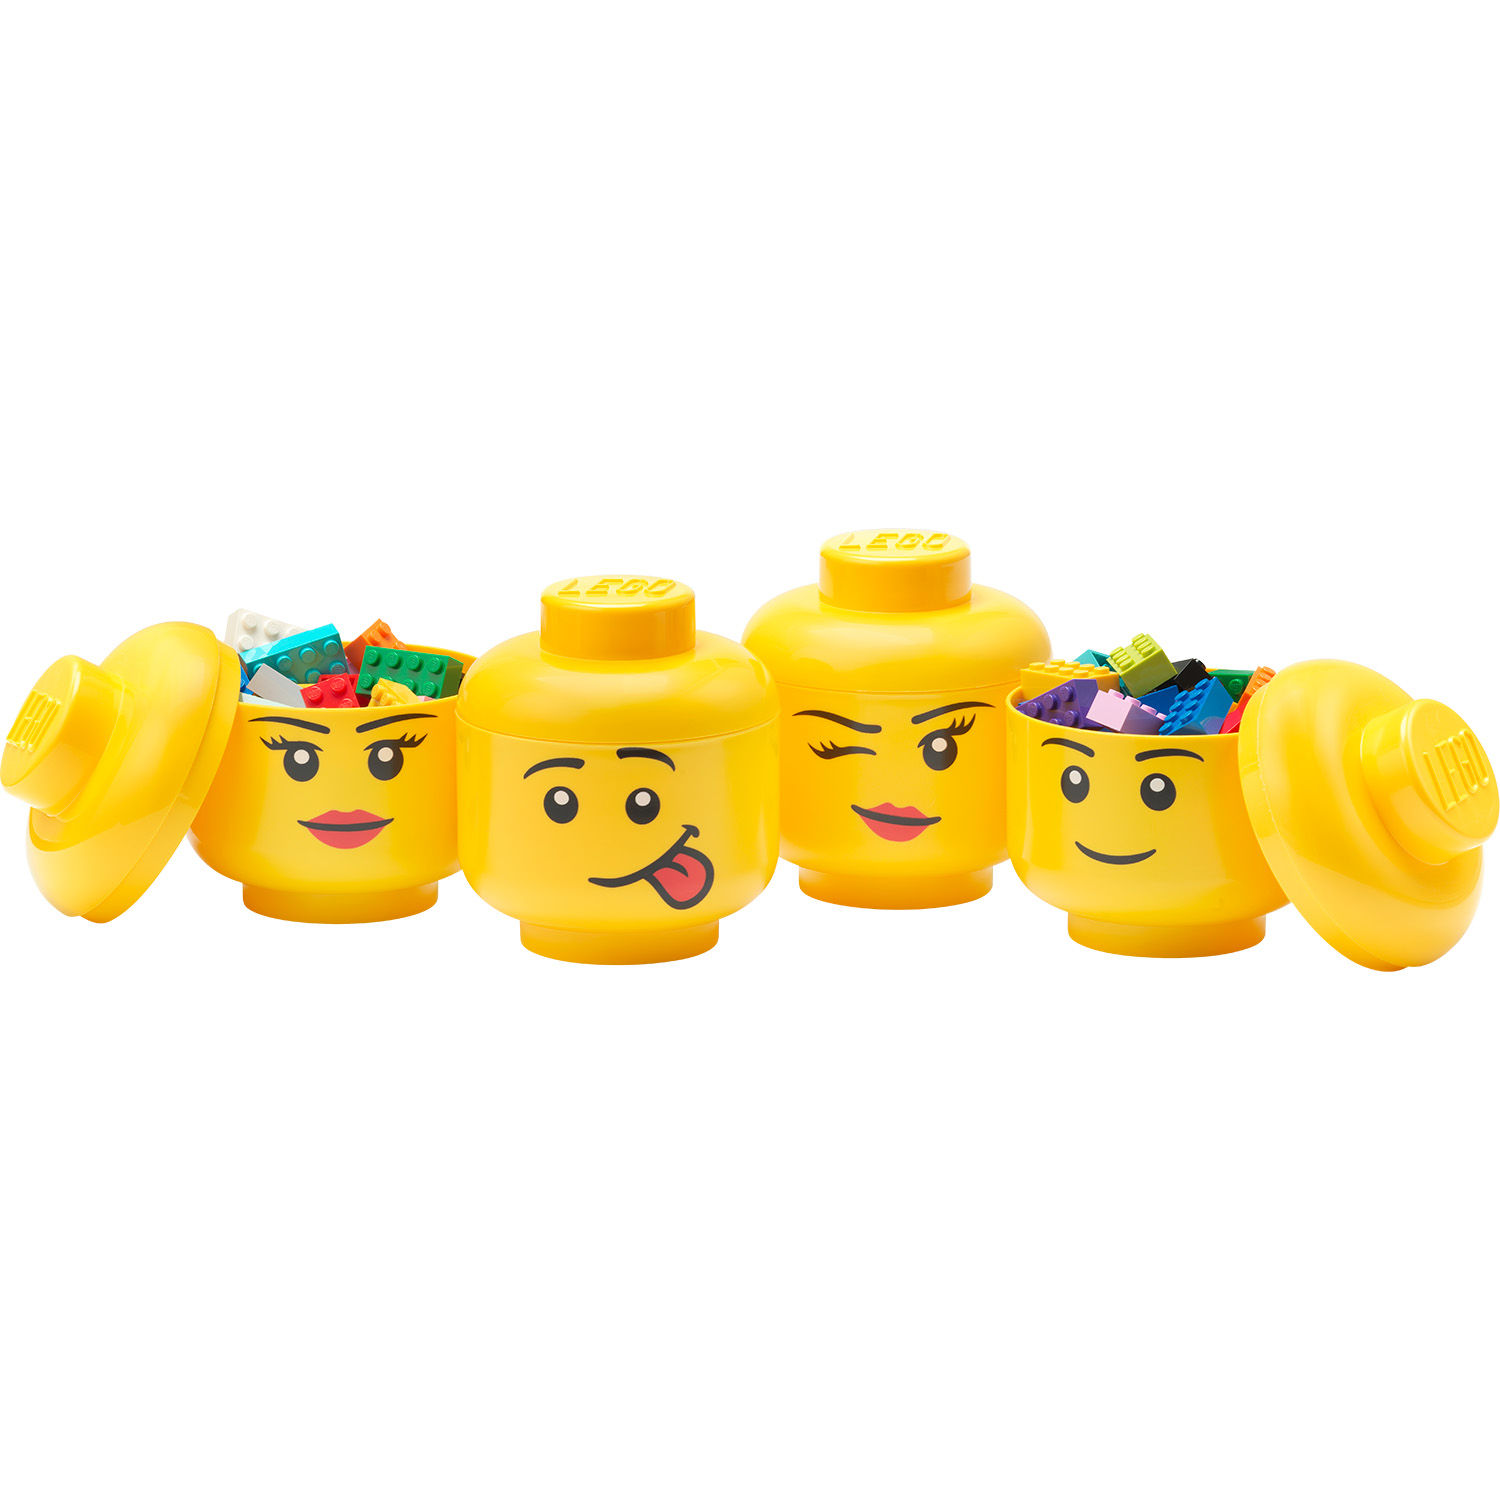 DIY Lego Head Storage